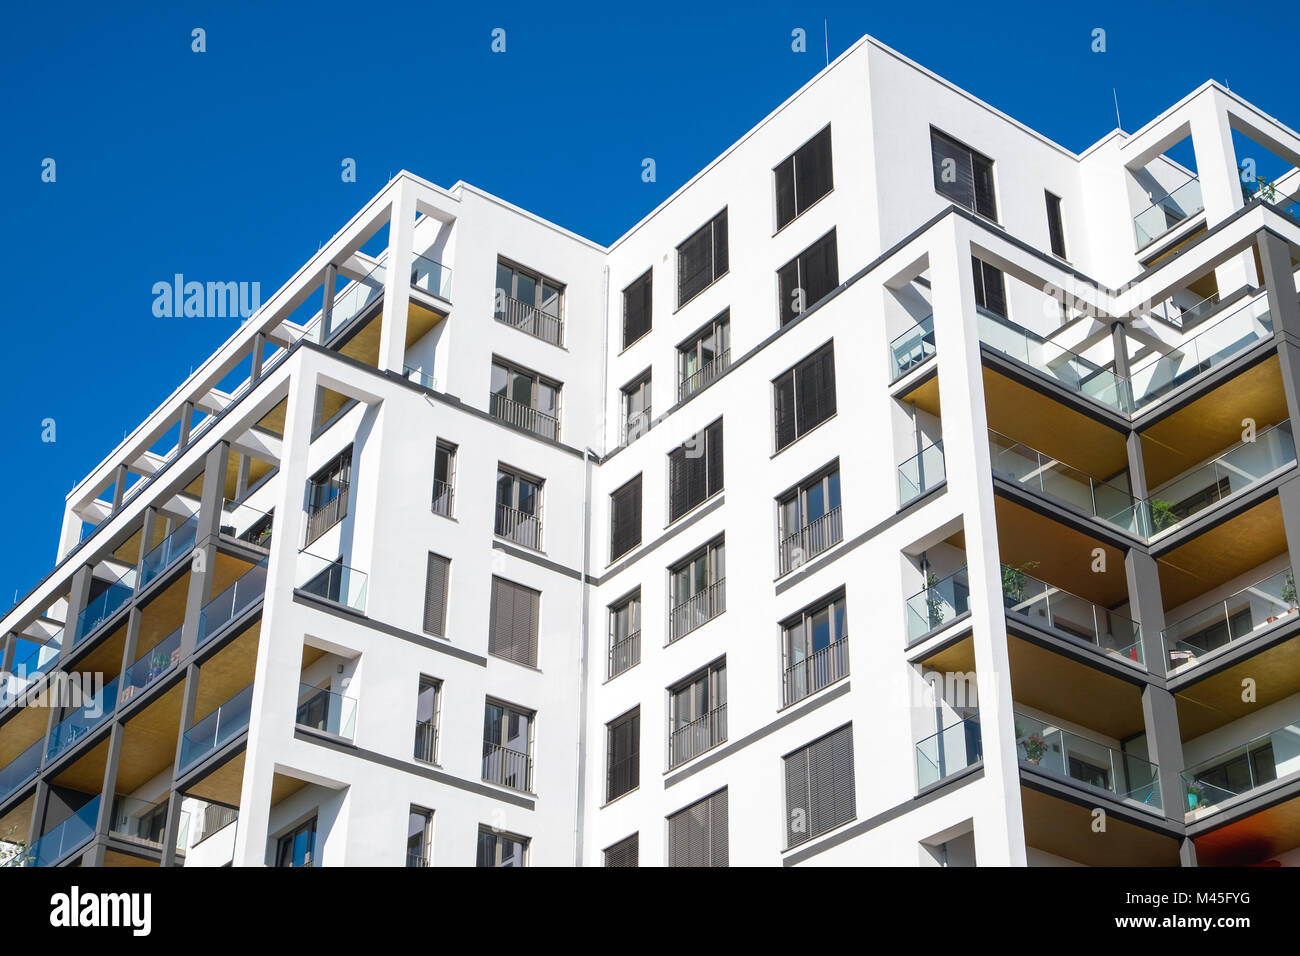 Modern block of flats seen in Berlin, Germany Stock Photo